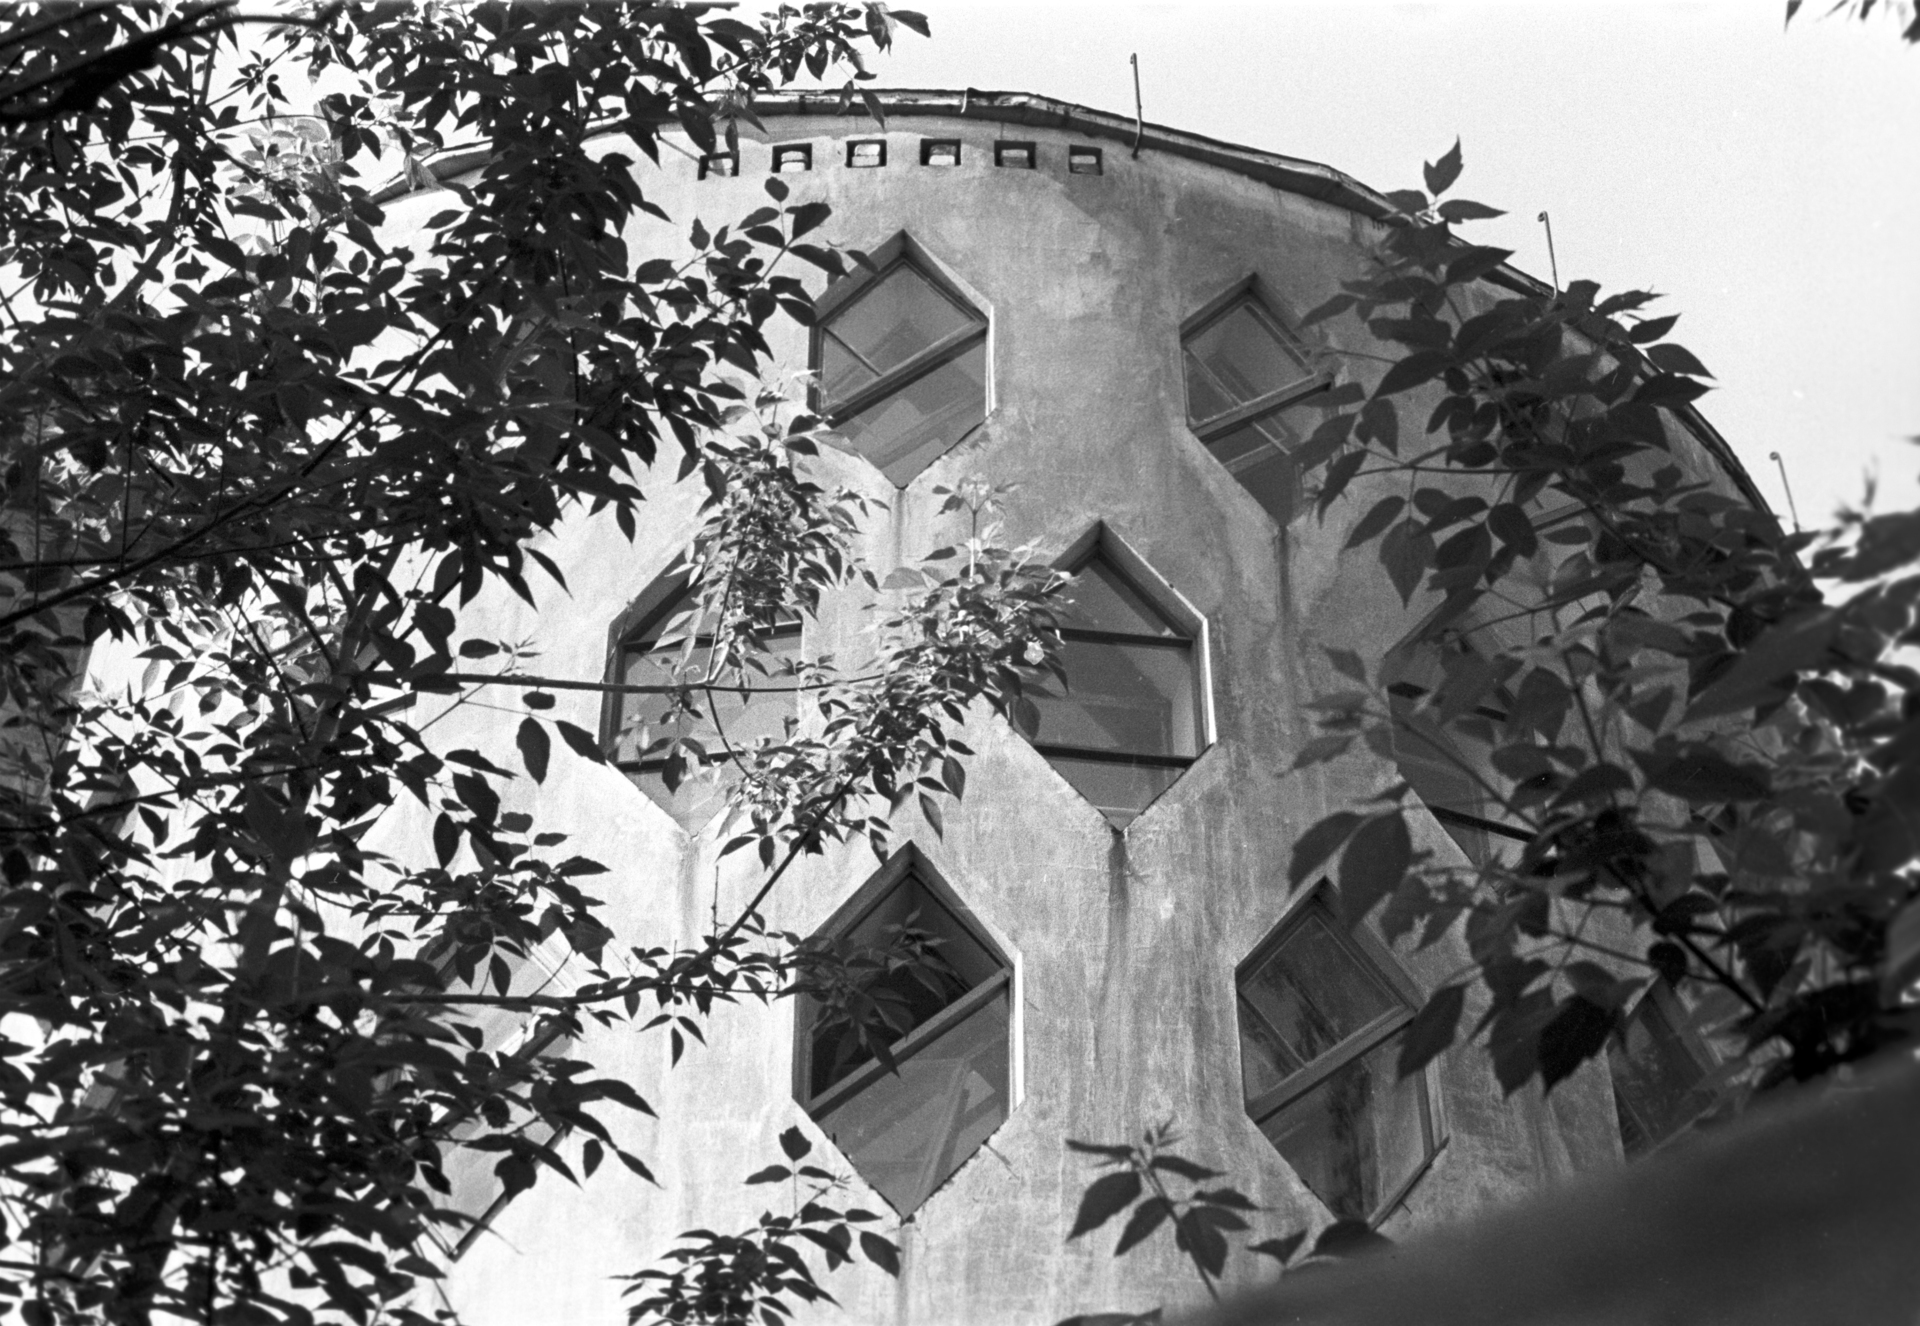 Дом-мастерская архитектора Константина Степановича Мельникова в Кривоарбатском переулке, 1971 год